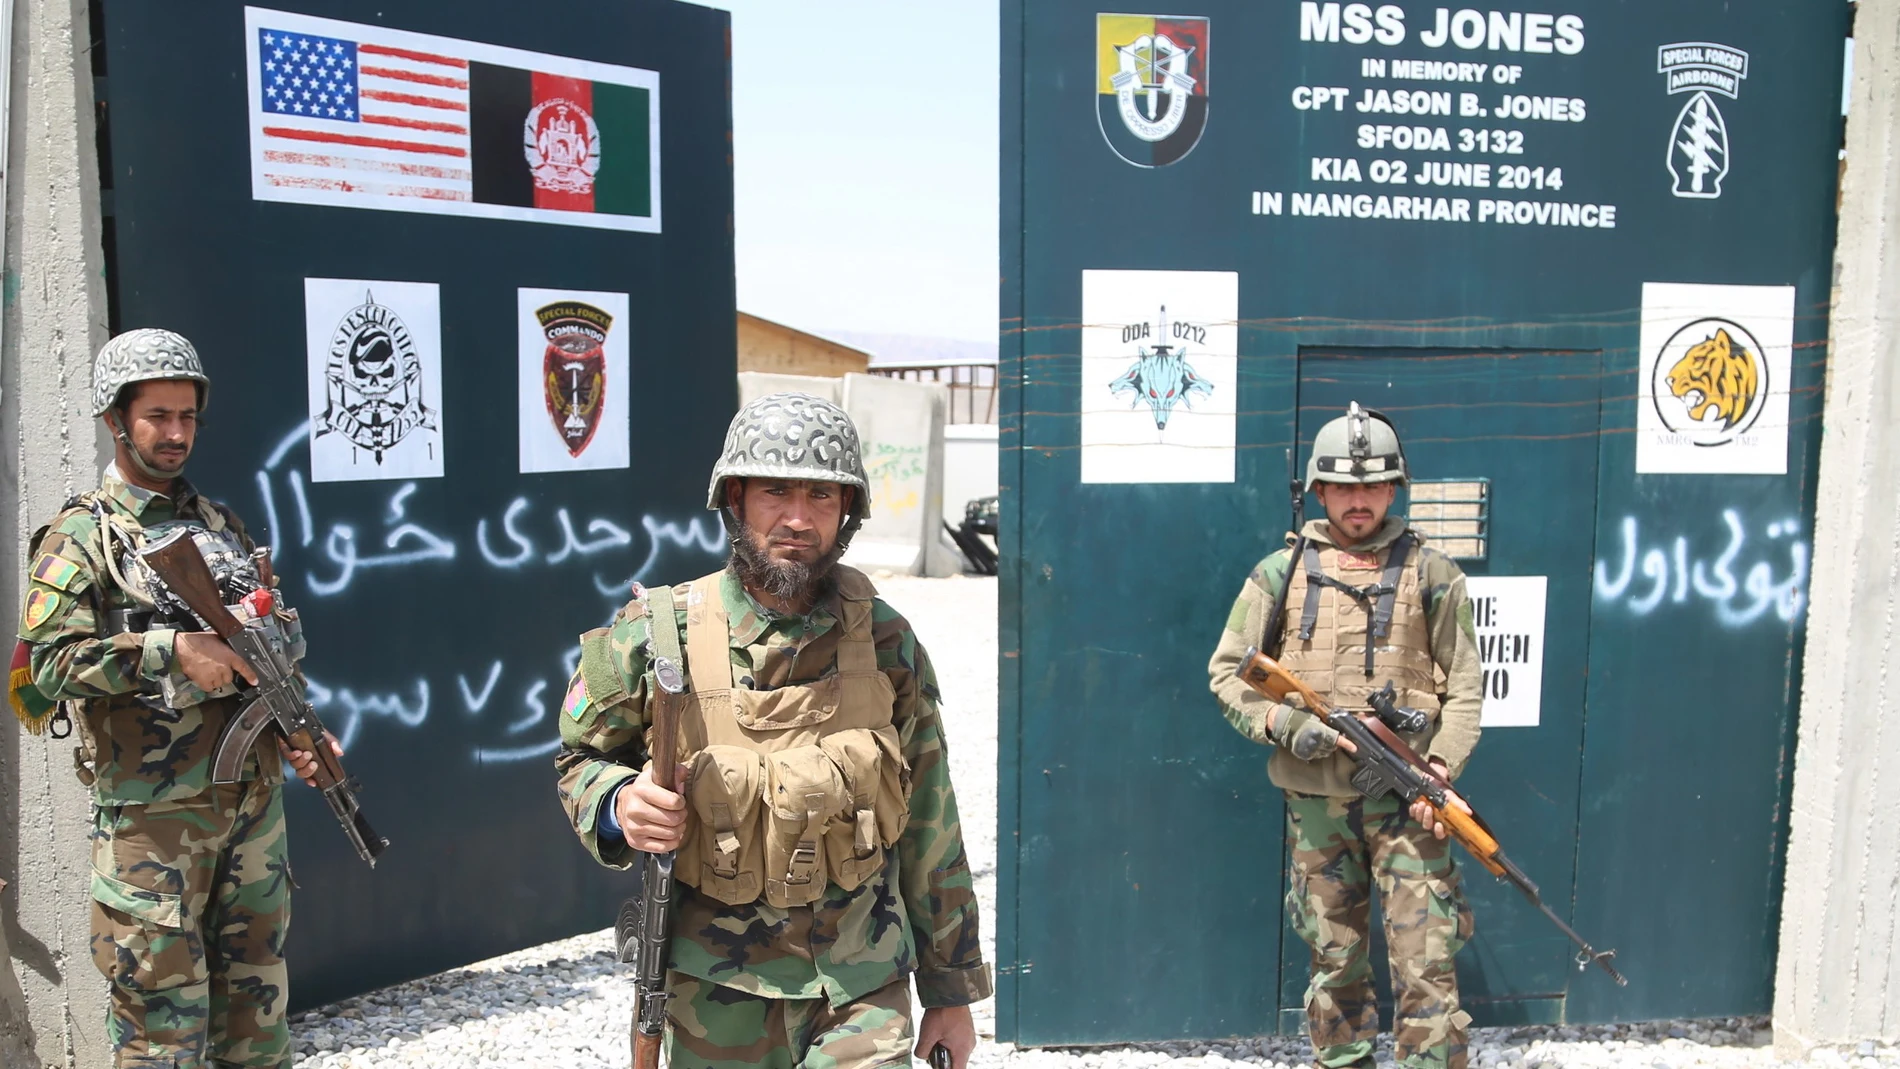 Soldados del ejército afgano aseguran una base militar que anteriormente utilizaban los soldados estadounidenses, en el distrito de Haska Meyna de la provincia de Nangarhar, Afganistán